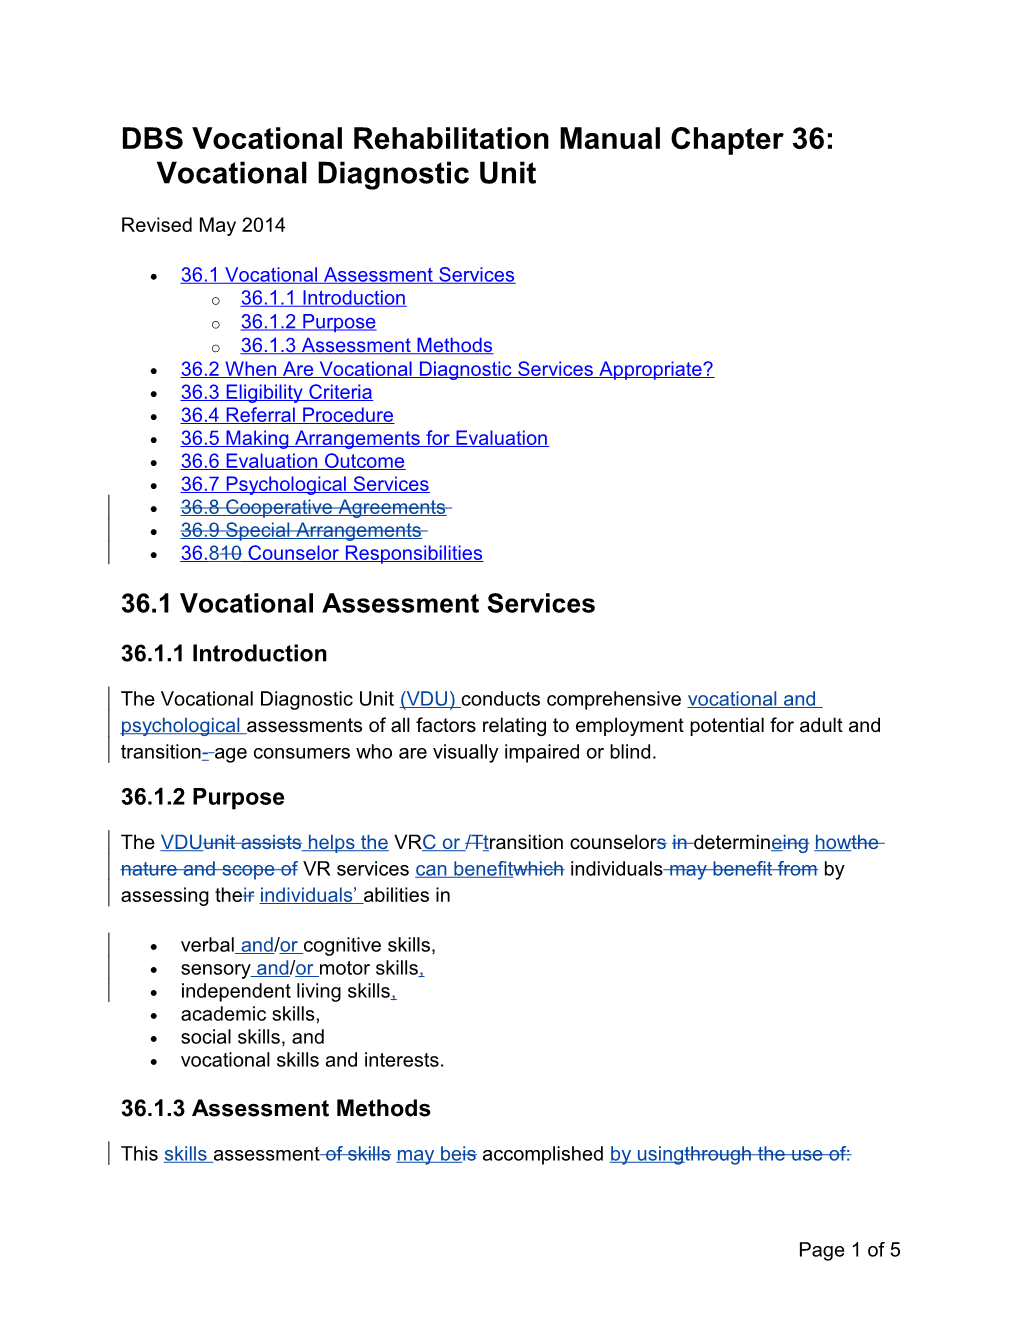 DBS VR Manual Chapter 36 Revisions, May 2014